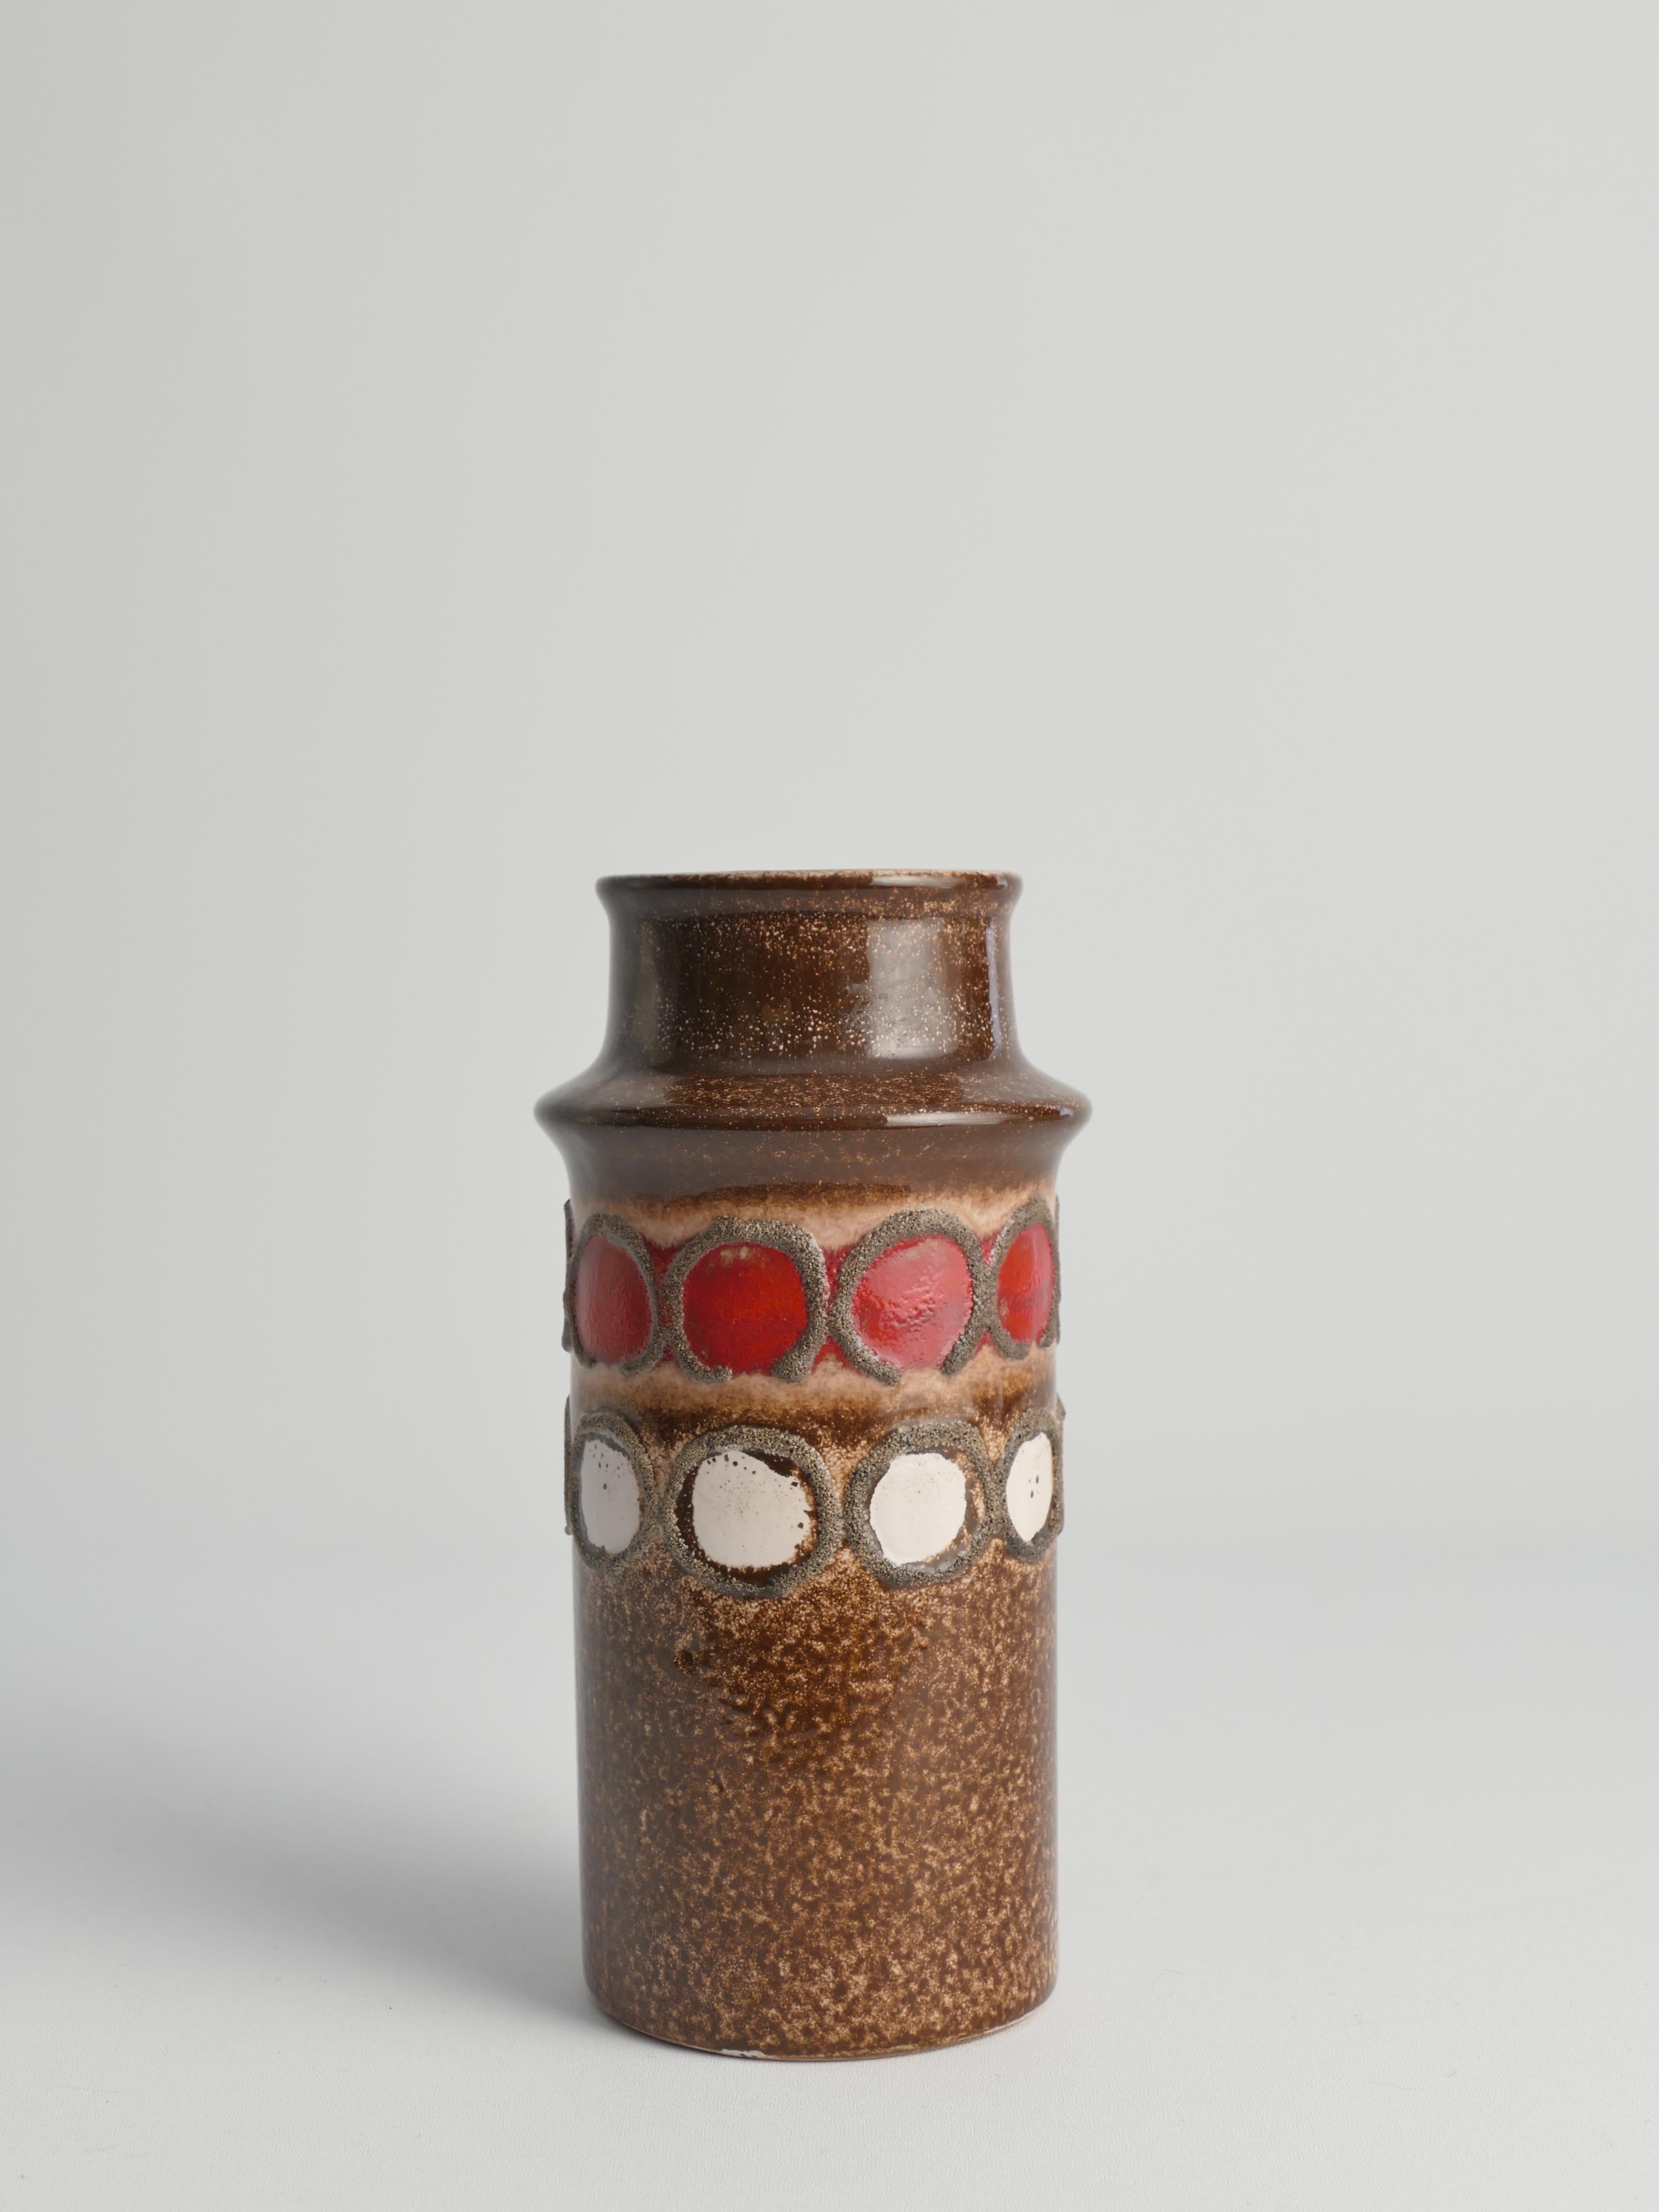 Ce boîtier en céramique marron cool du milieu du siècle par VEB Haldensleben a été fabriqué en DDR (Deutsche Demokratische Republik), Allemagne de l'Est, dans les années 1960. Ce vase, une création de VEB Haldensleben, est un excellent exemple de